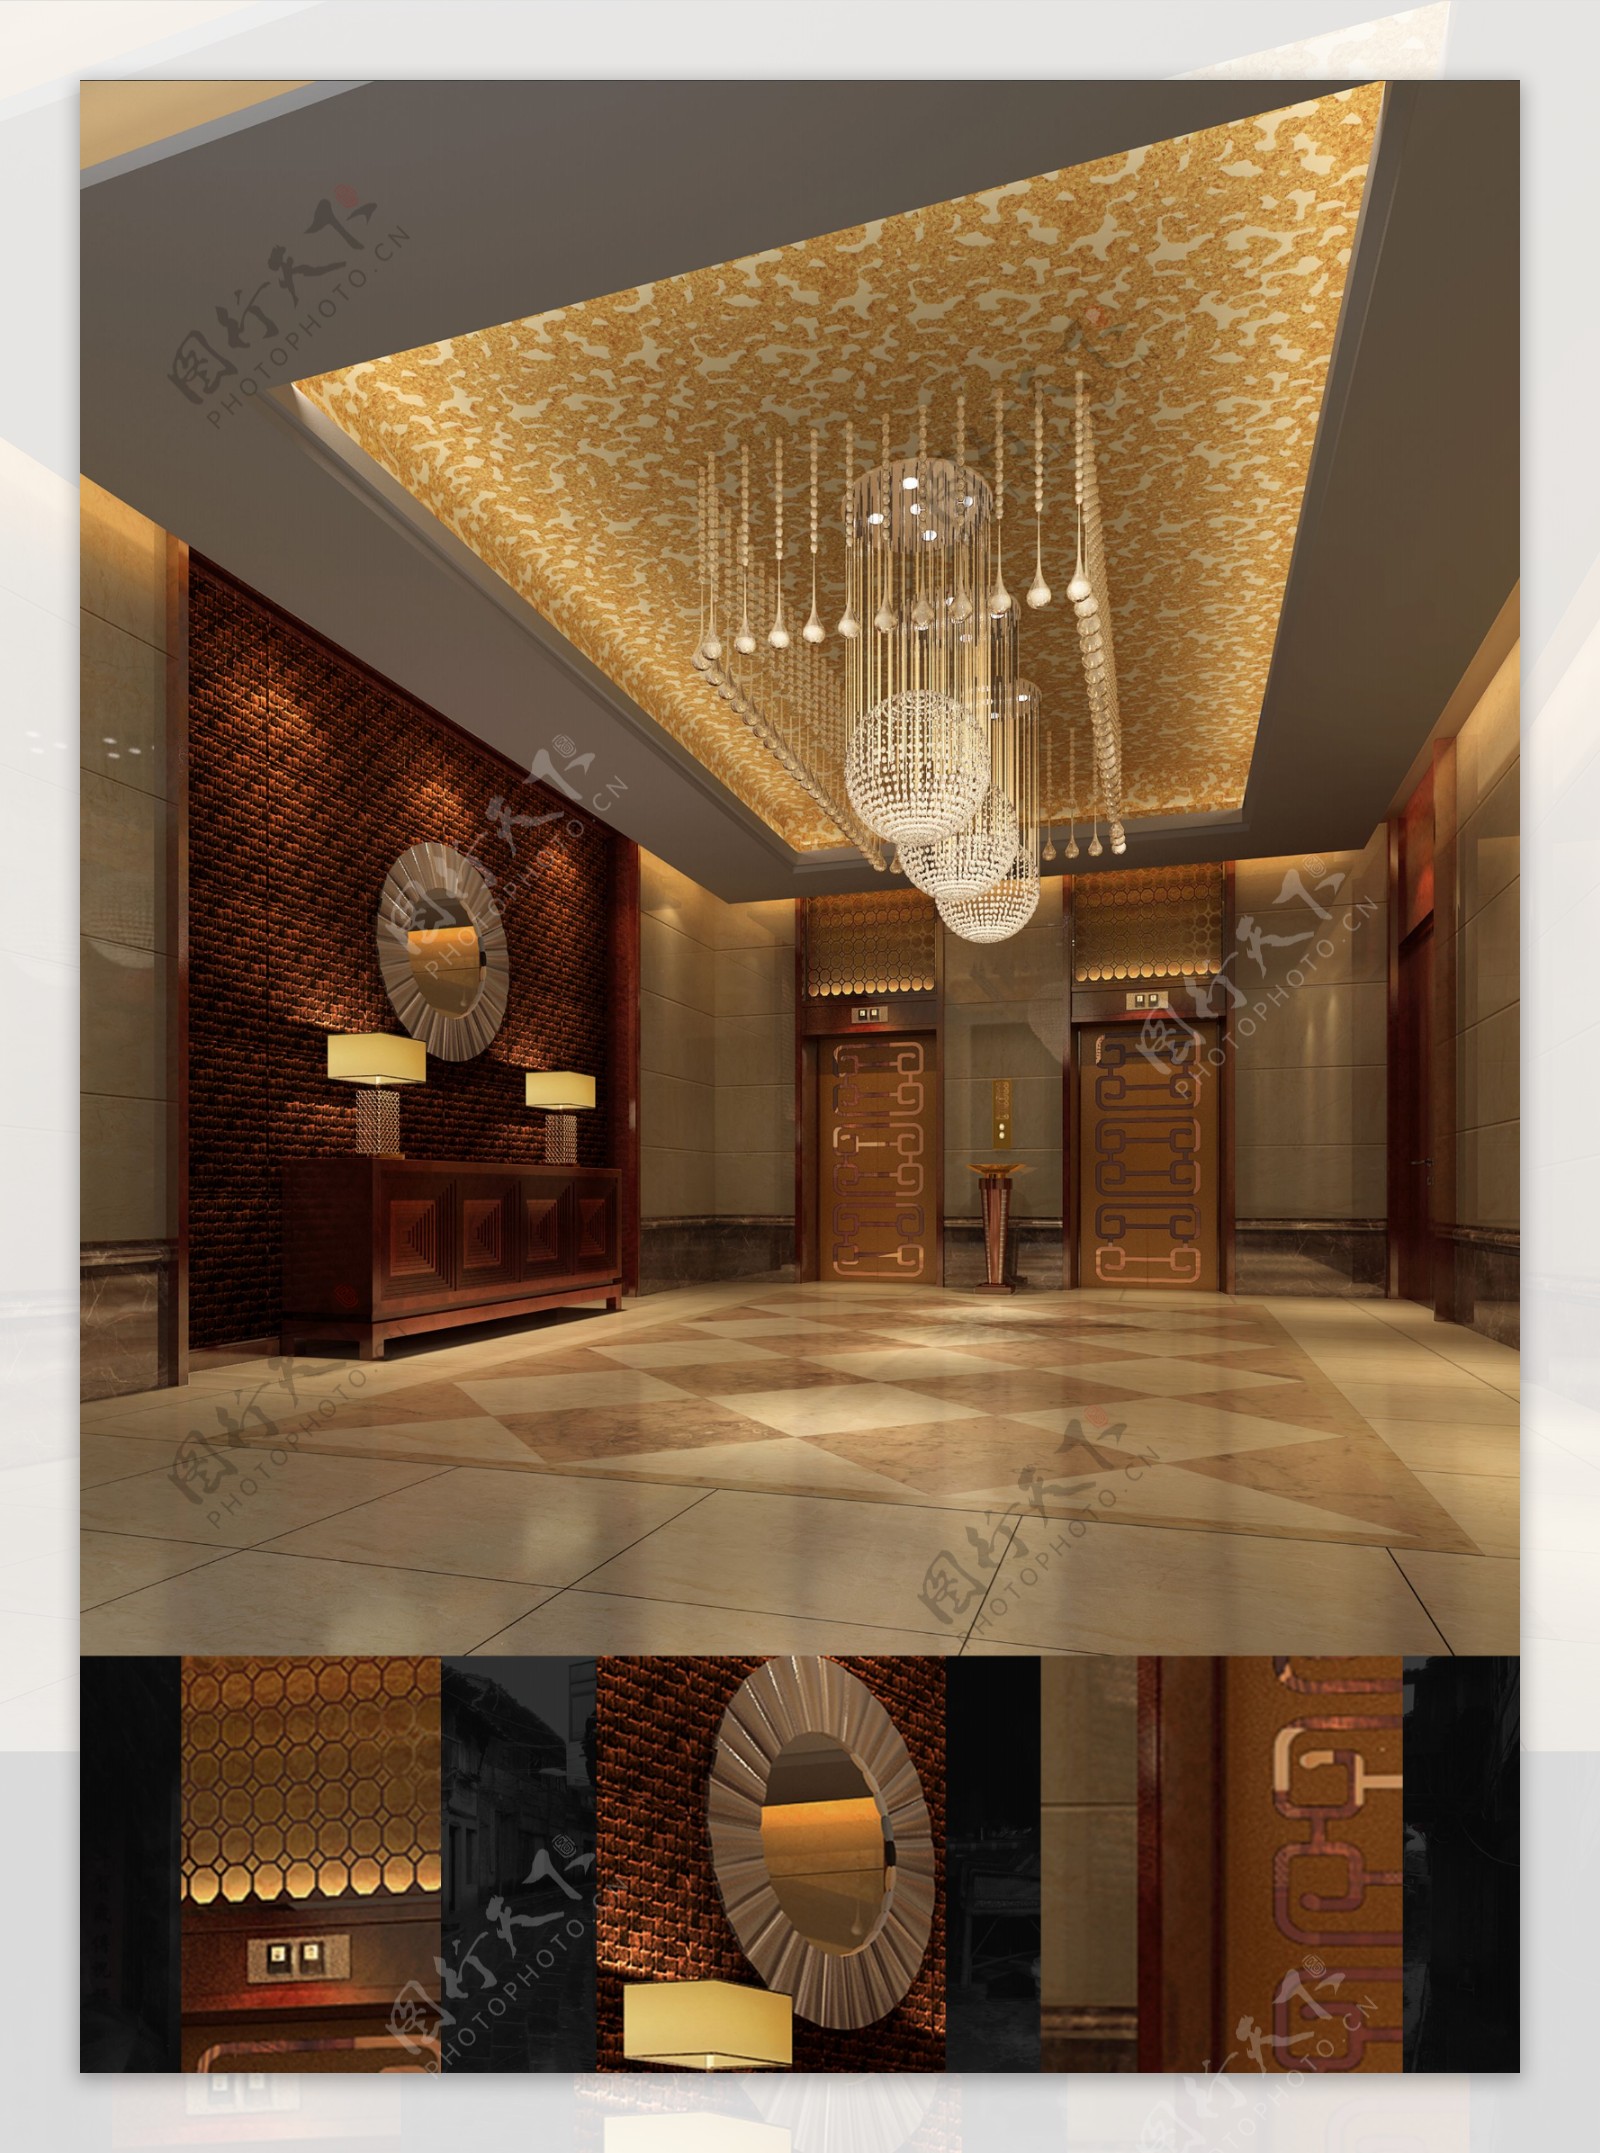 大堂+标准层电梯厅 - 效果图交流区-建E室内设计网